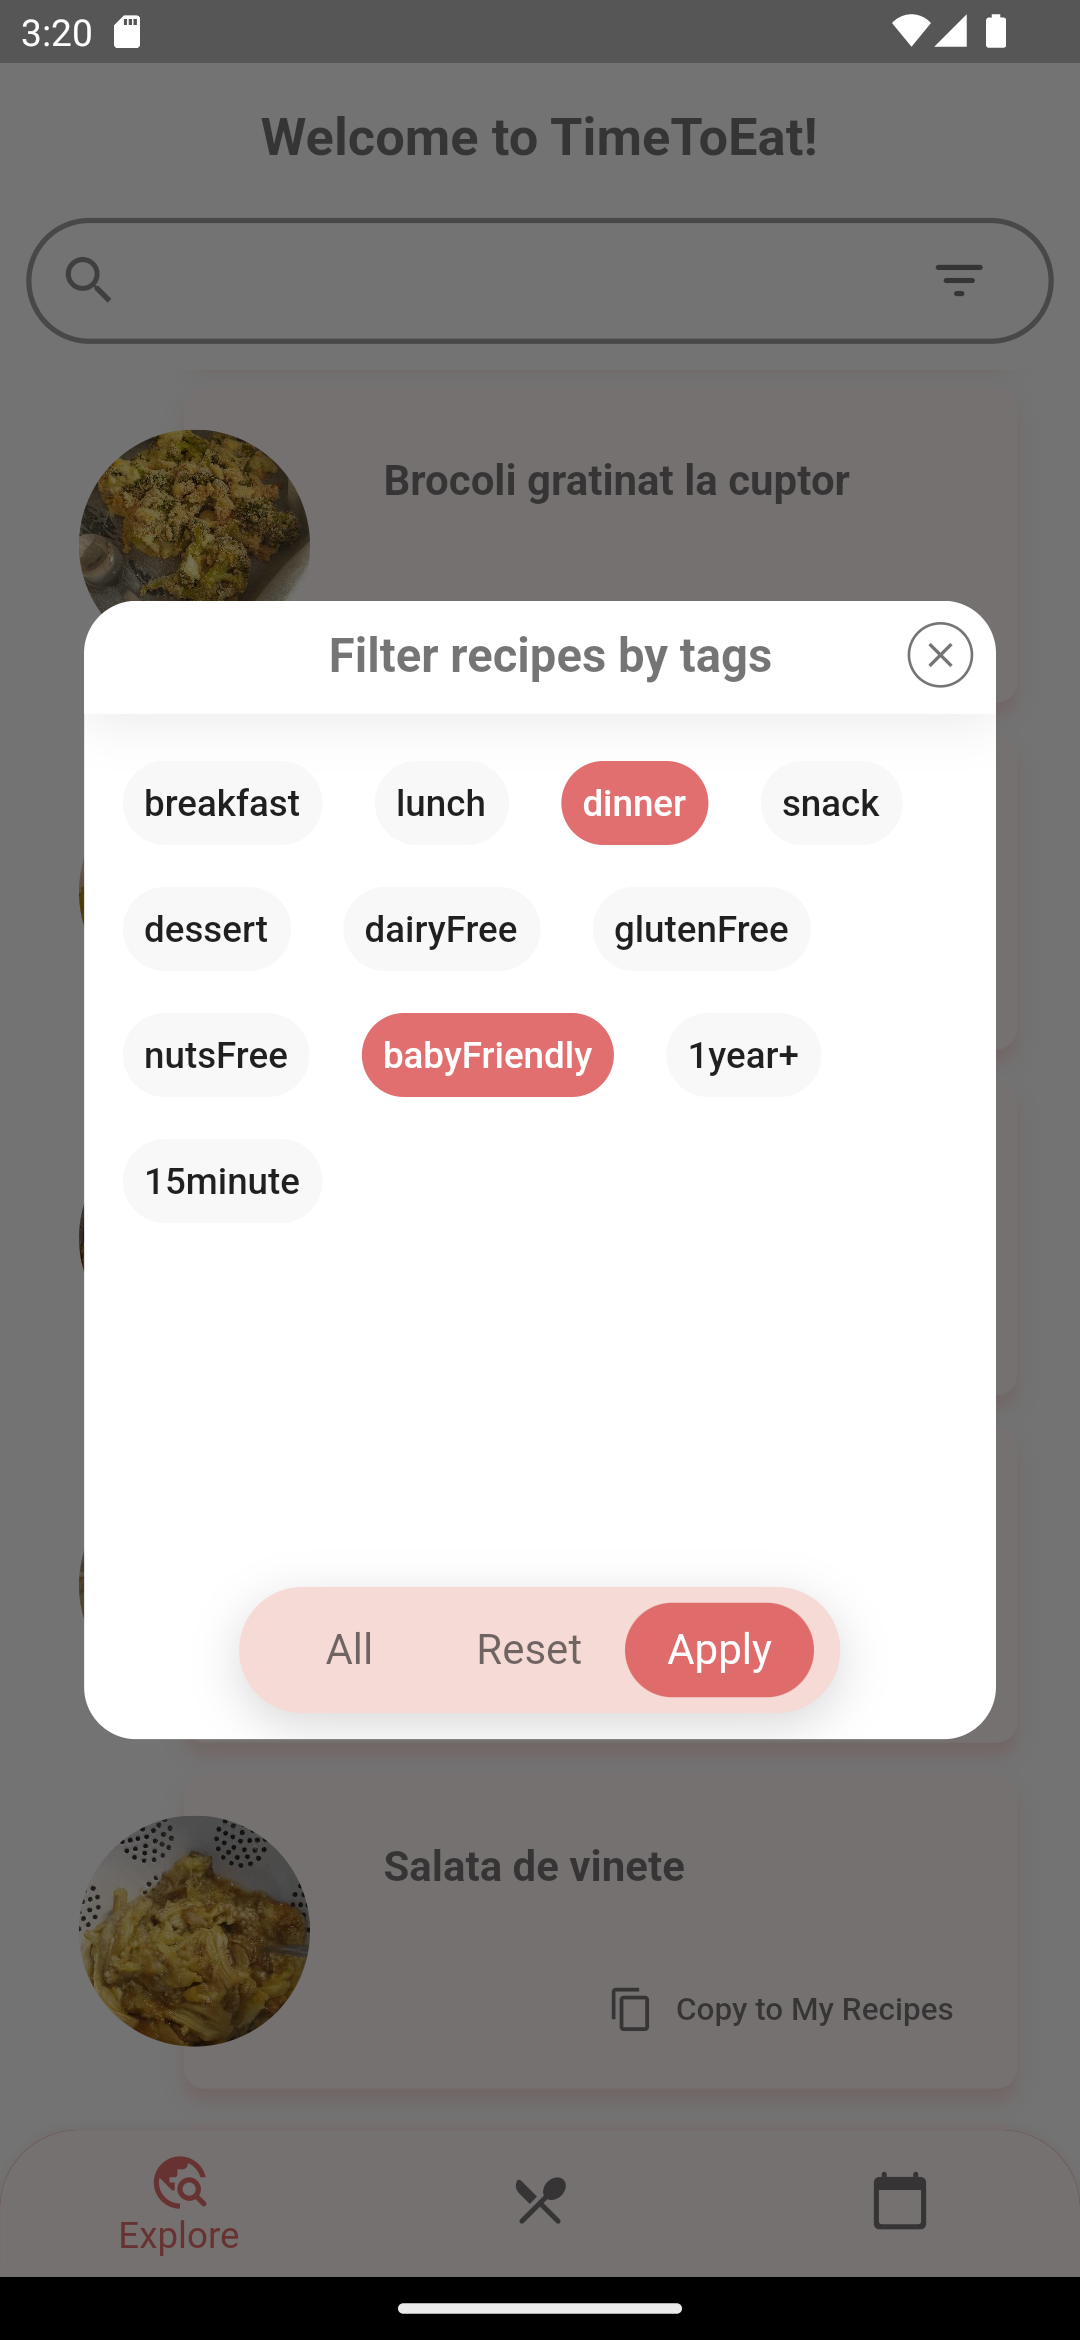 Filter recipes